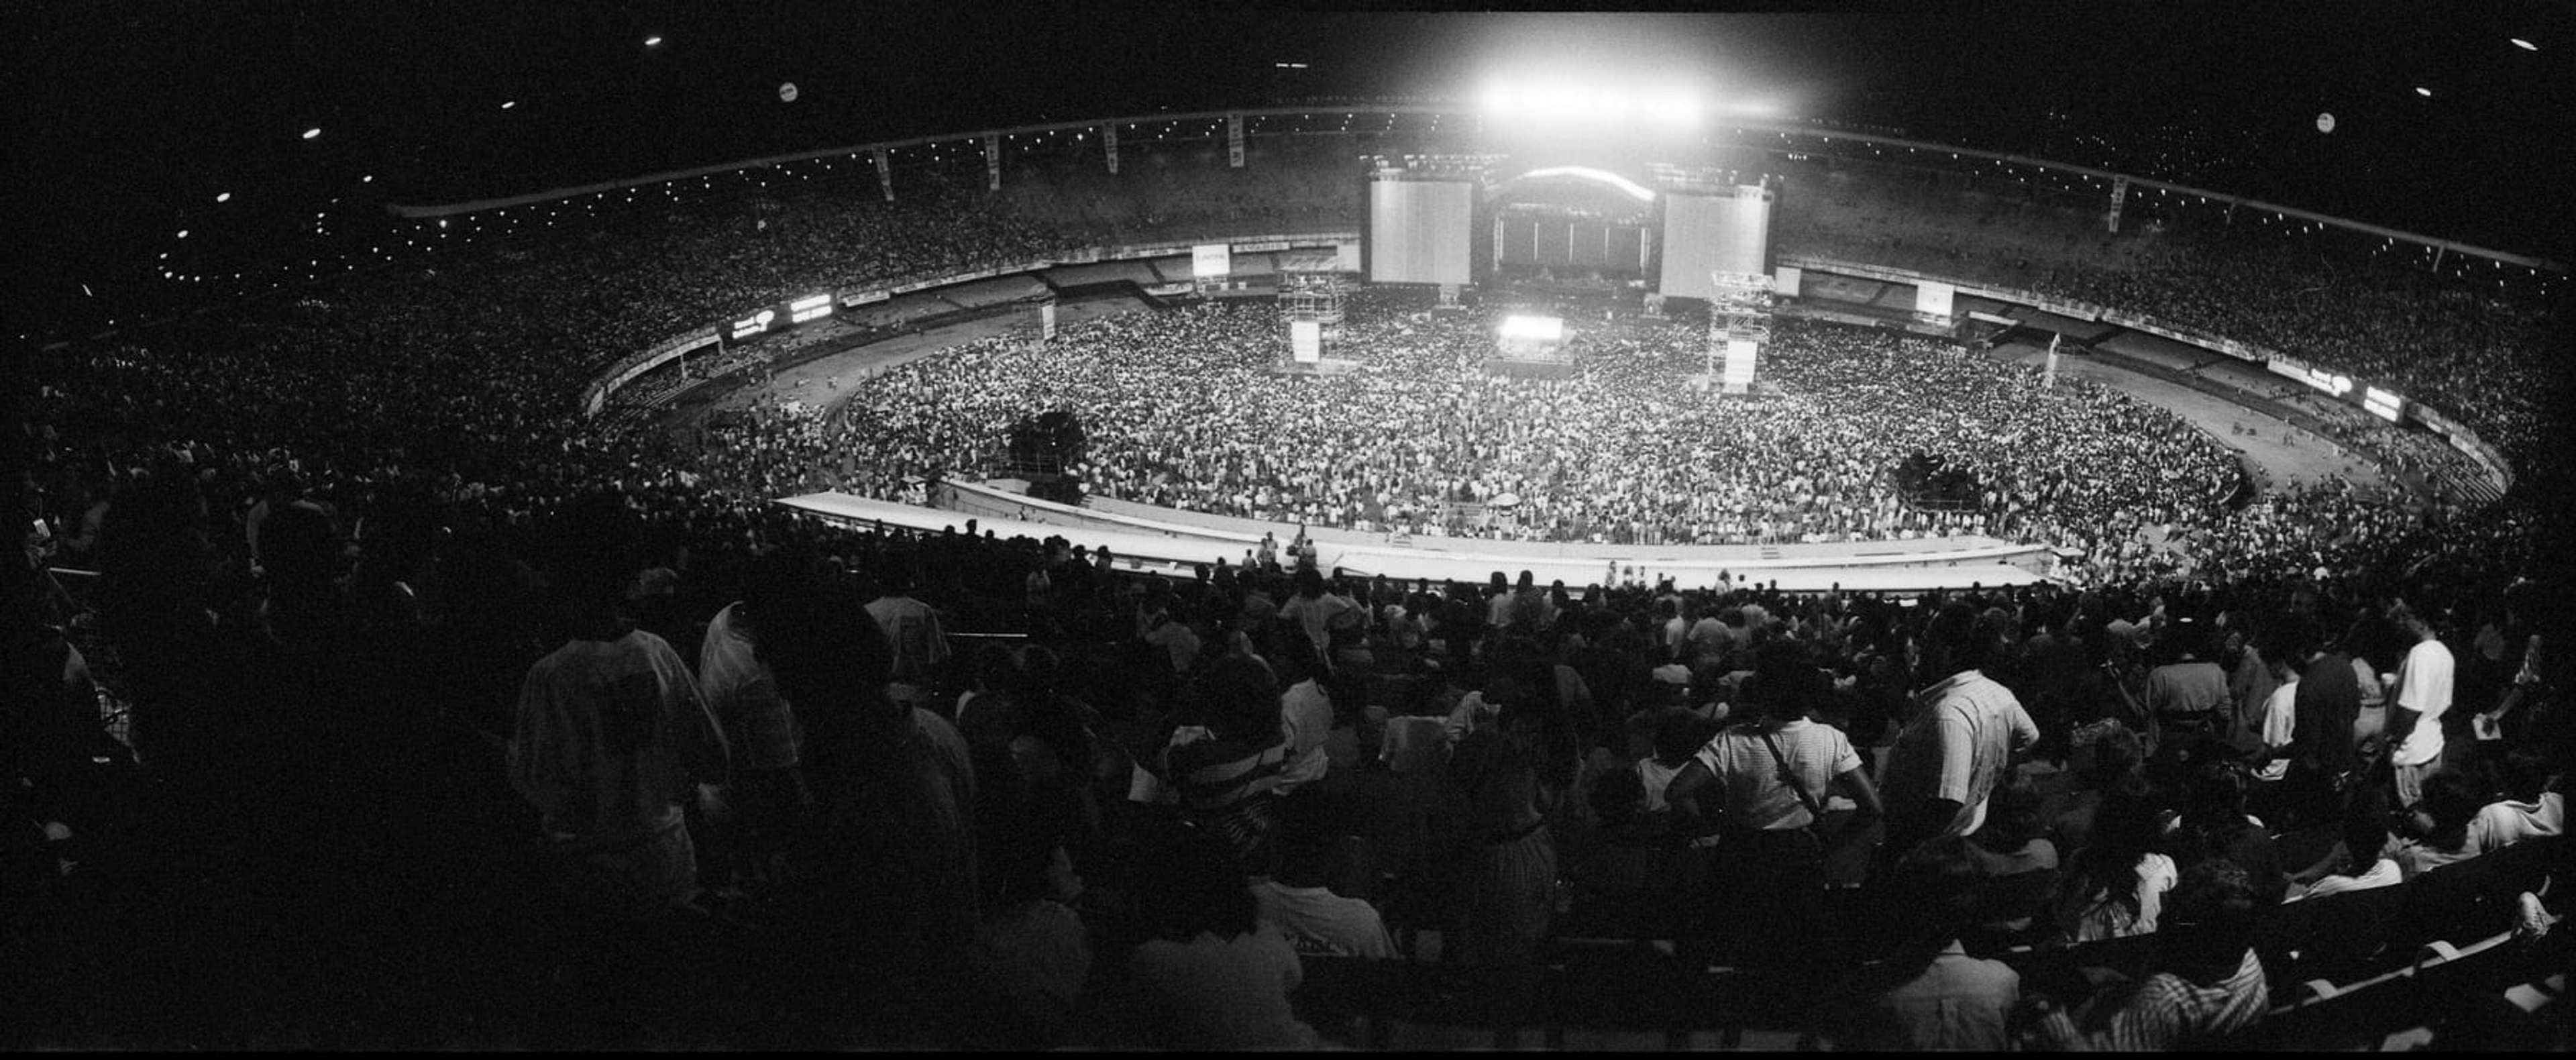 Photo of the crowd at Estádio do Maracanã, Rio de Janeiro in April 1990